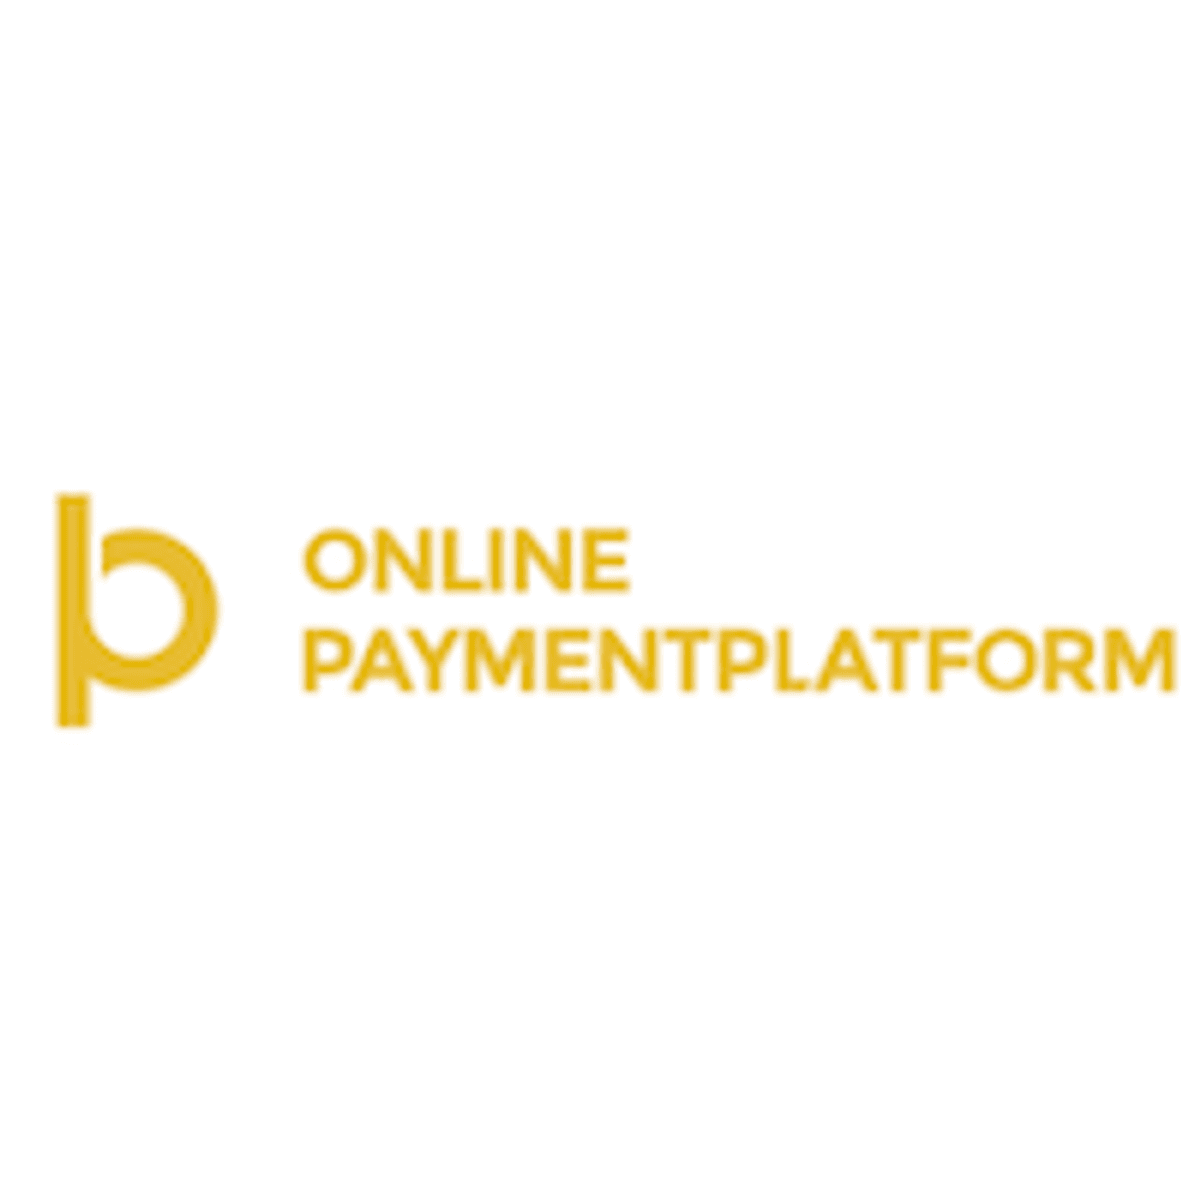 Online Payment Platform geselecteerd voor Techleap.nl Rise programma image